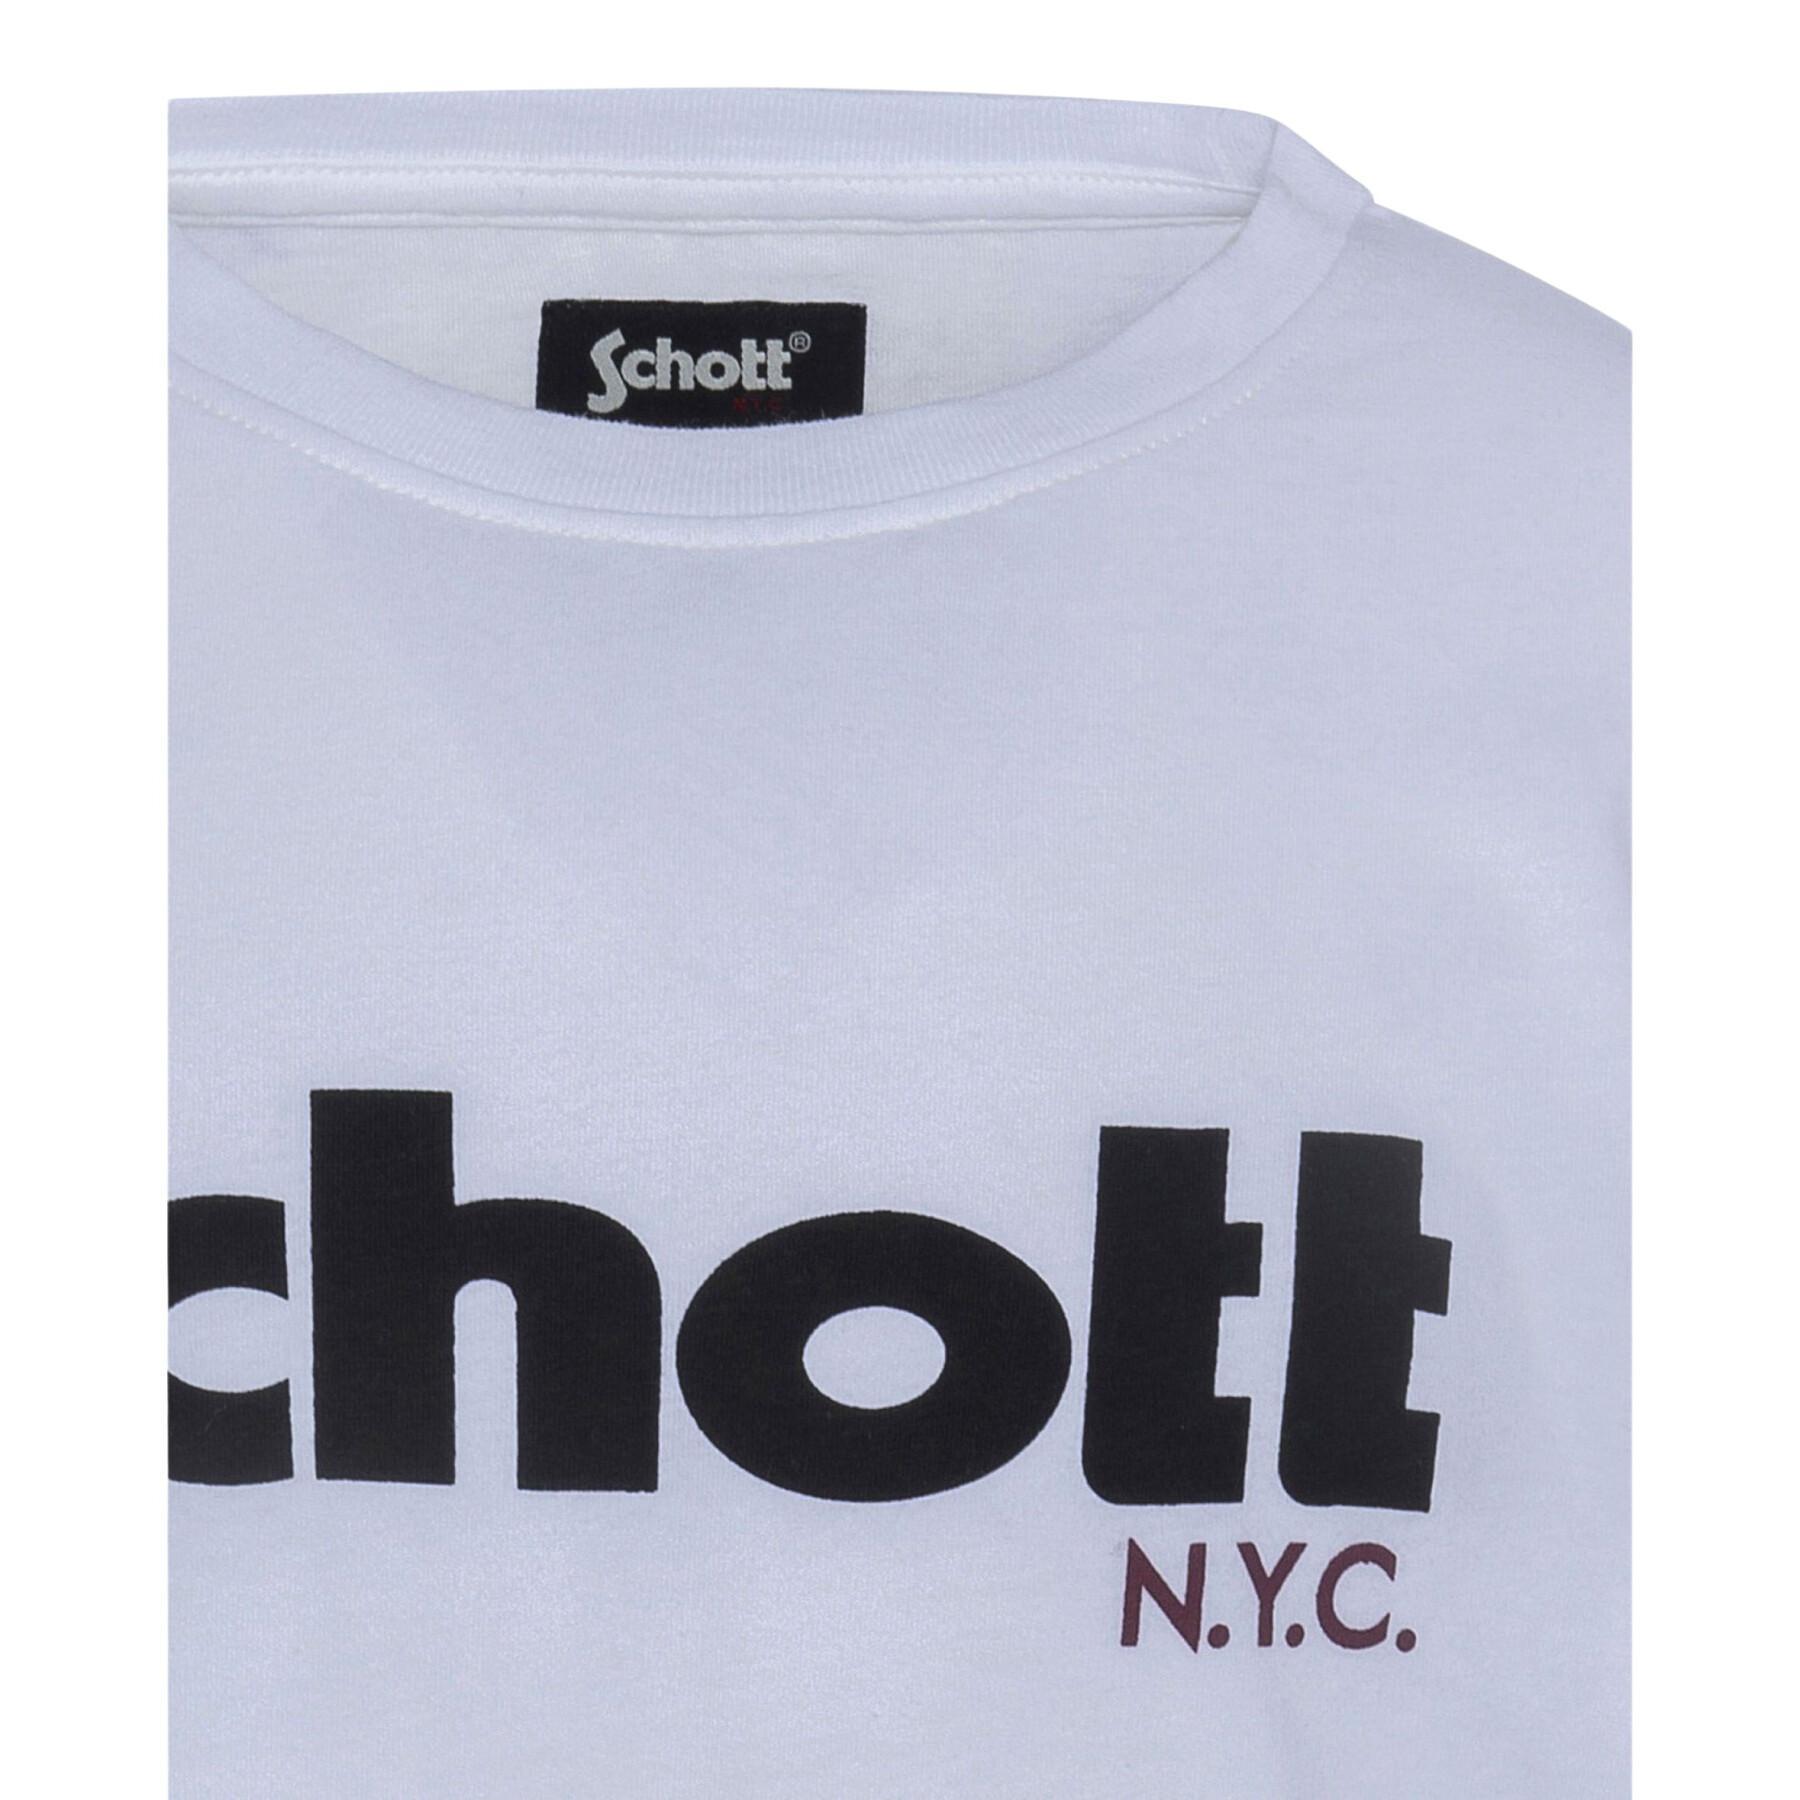 T-shirt manches longues enfant Schott